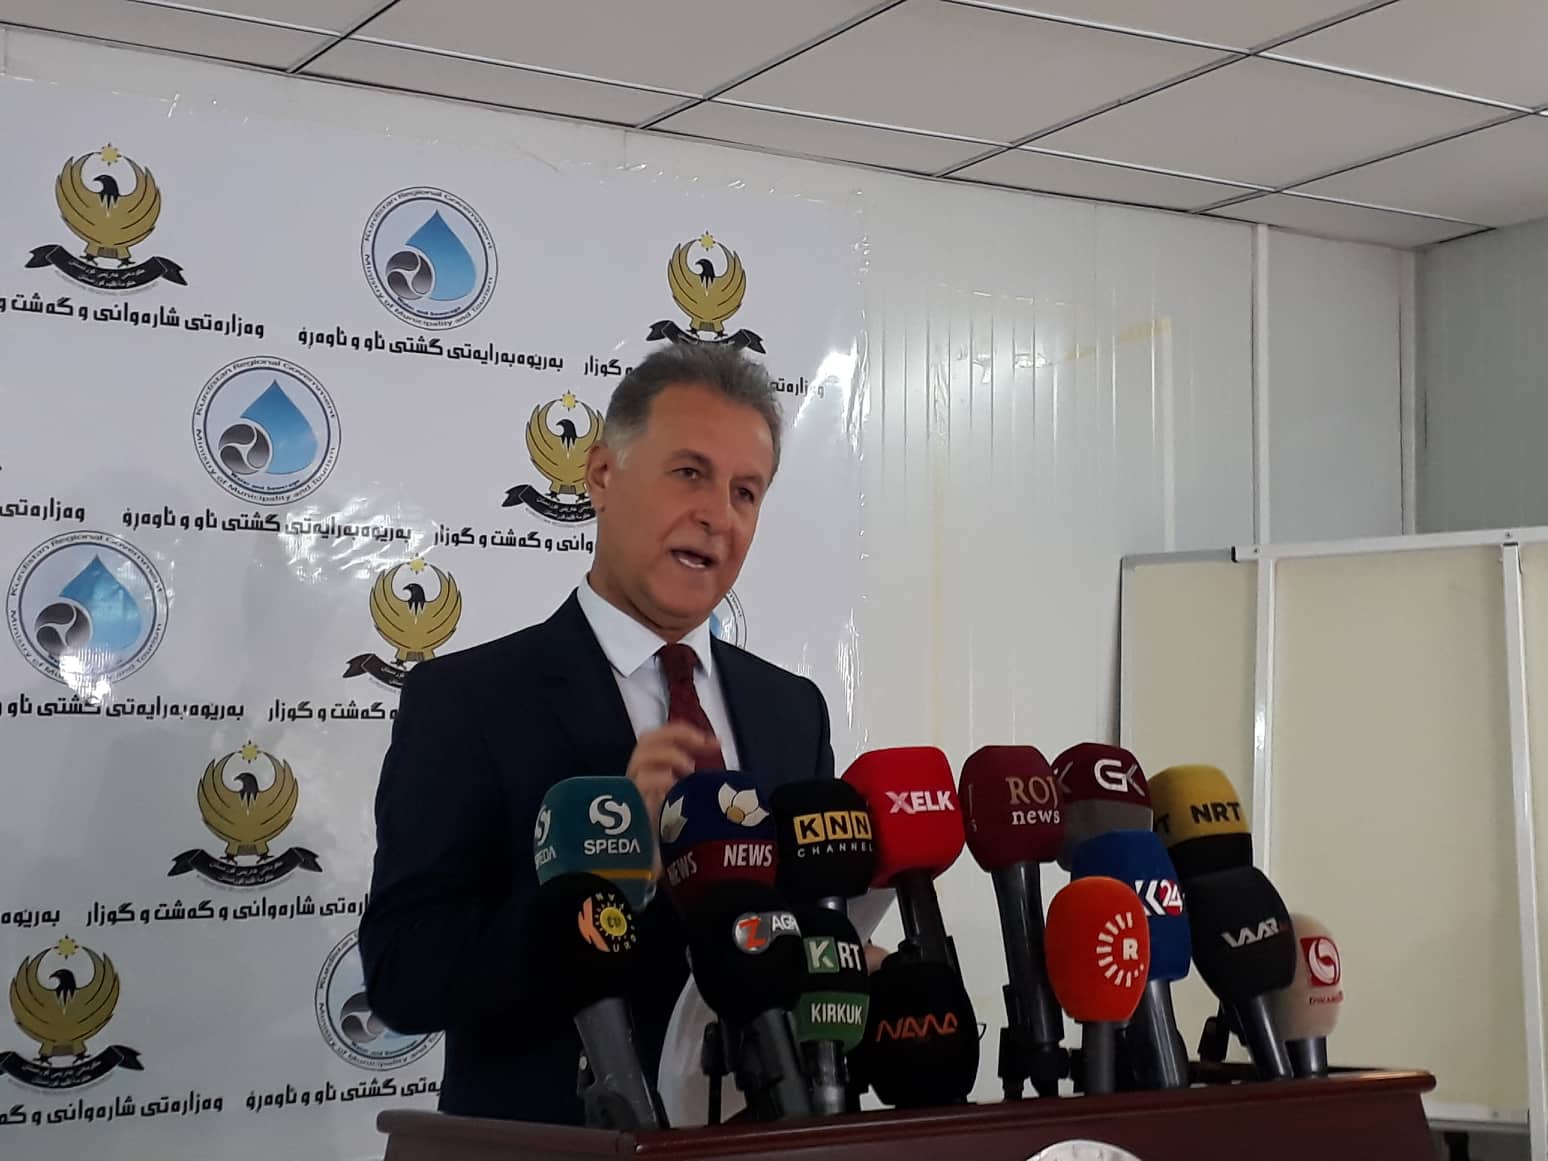 انتخاب نائب لرئيس الحكومة المحلية لعاصمة اقليم كوردستان